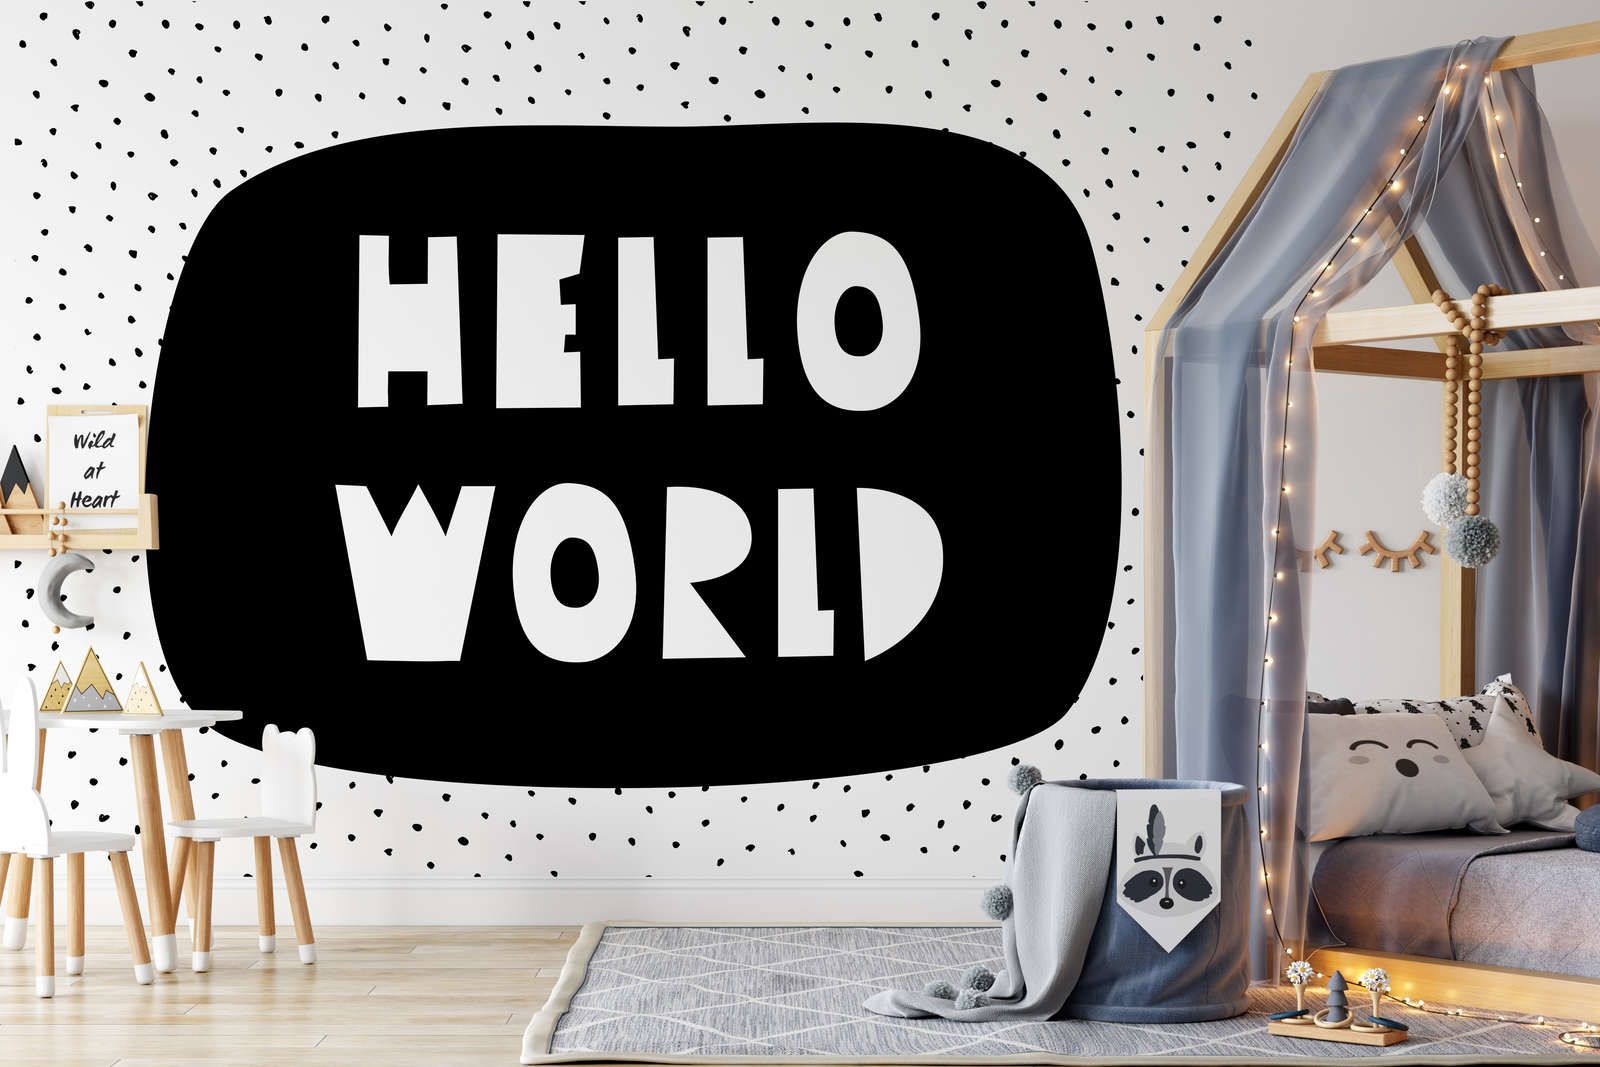             Fototapete fürs Kinderzimmer mit Schriftzug "Hello World" – Glattes & perlmutt-schimmerndes Vlies
        